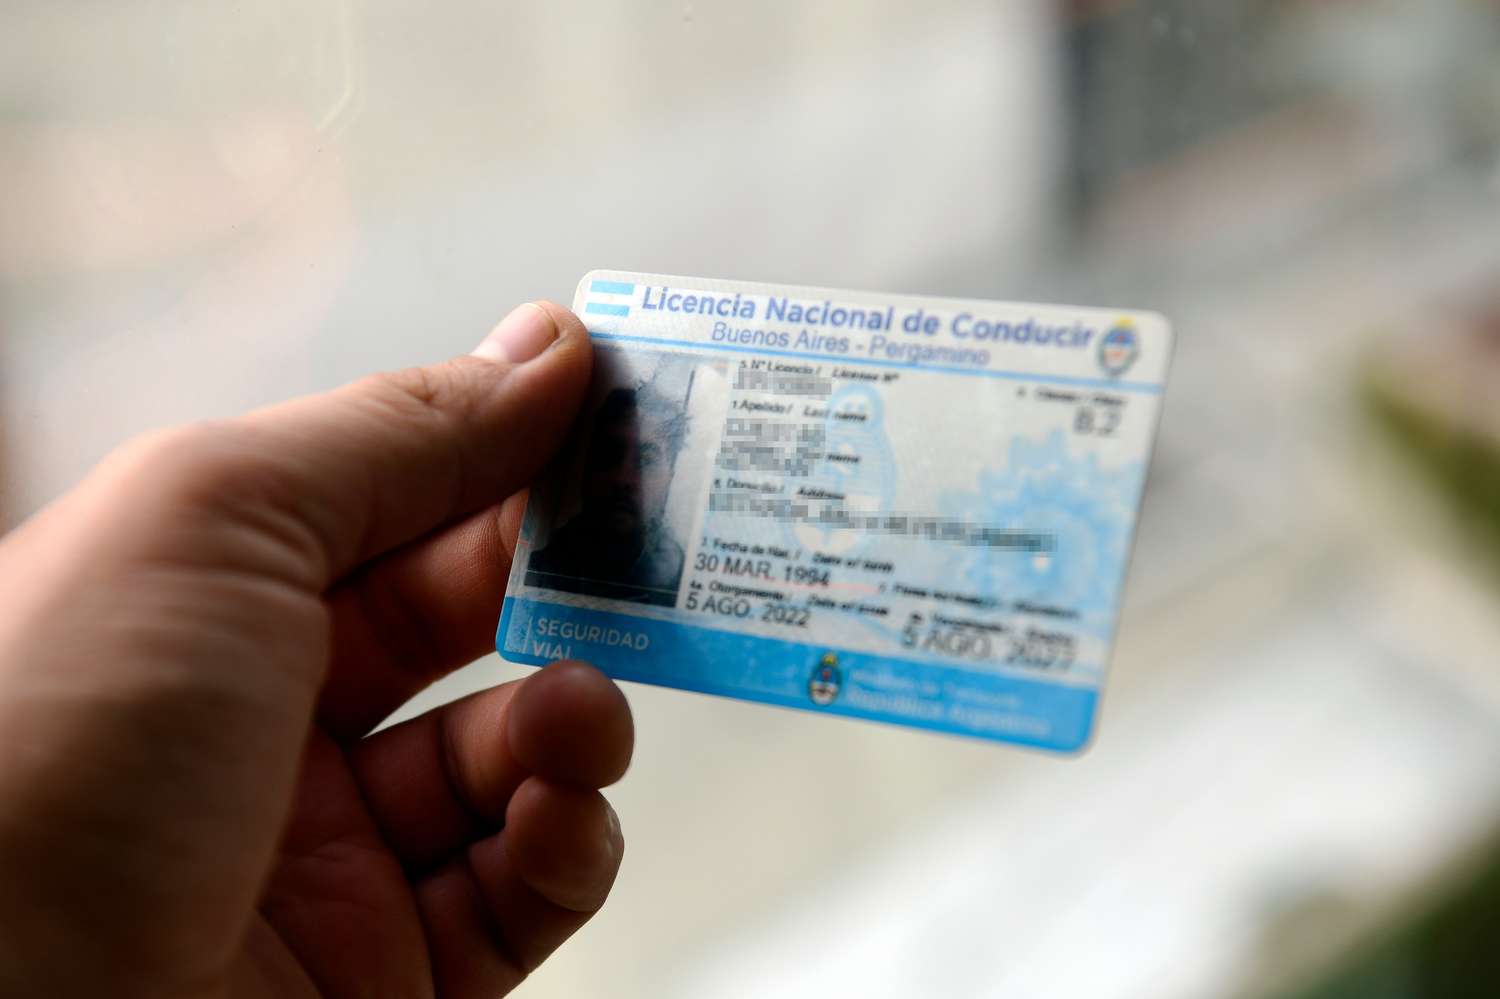 Carnets de conducir: el certificado ya no es válido y podrían caber multas por no retirar la licencia